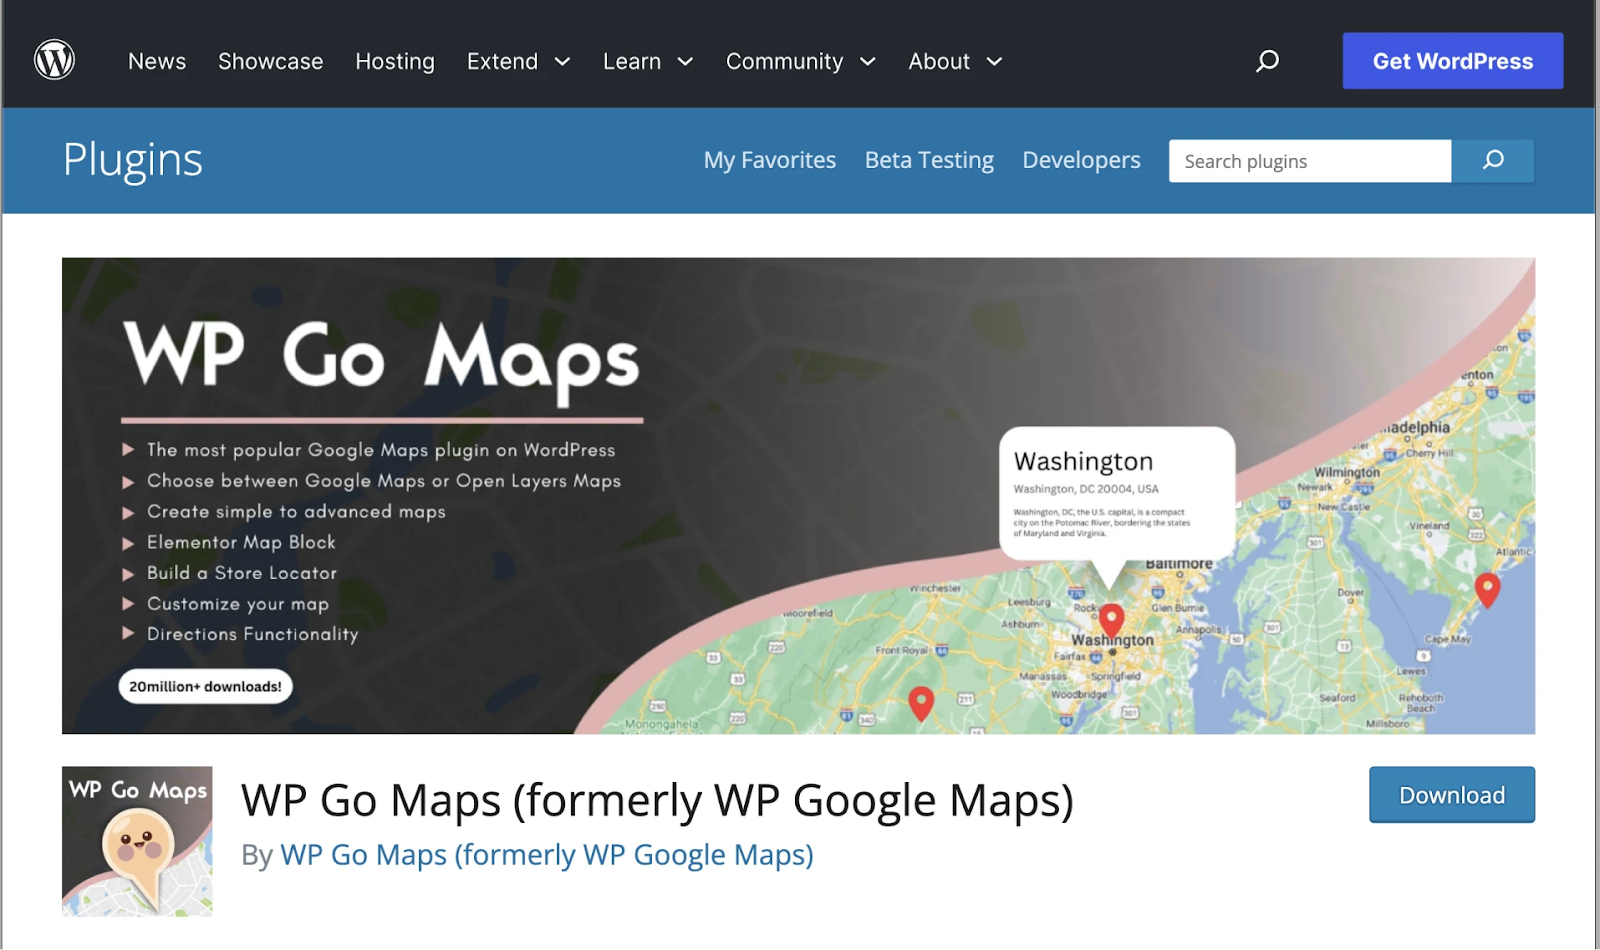 Captura de pantalla de WP Go Maps en la página "Plugins" de WordPress. Características del plugin en viñetas con un mapa parcial a la derecha.